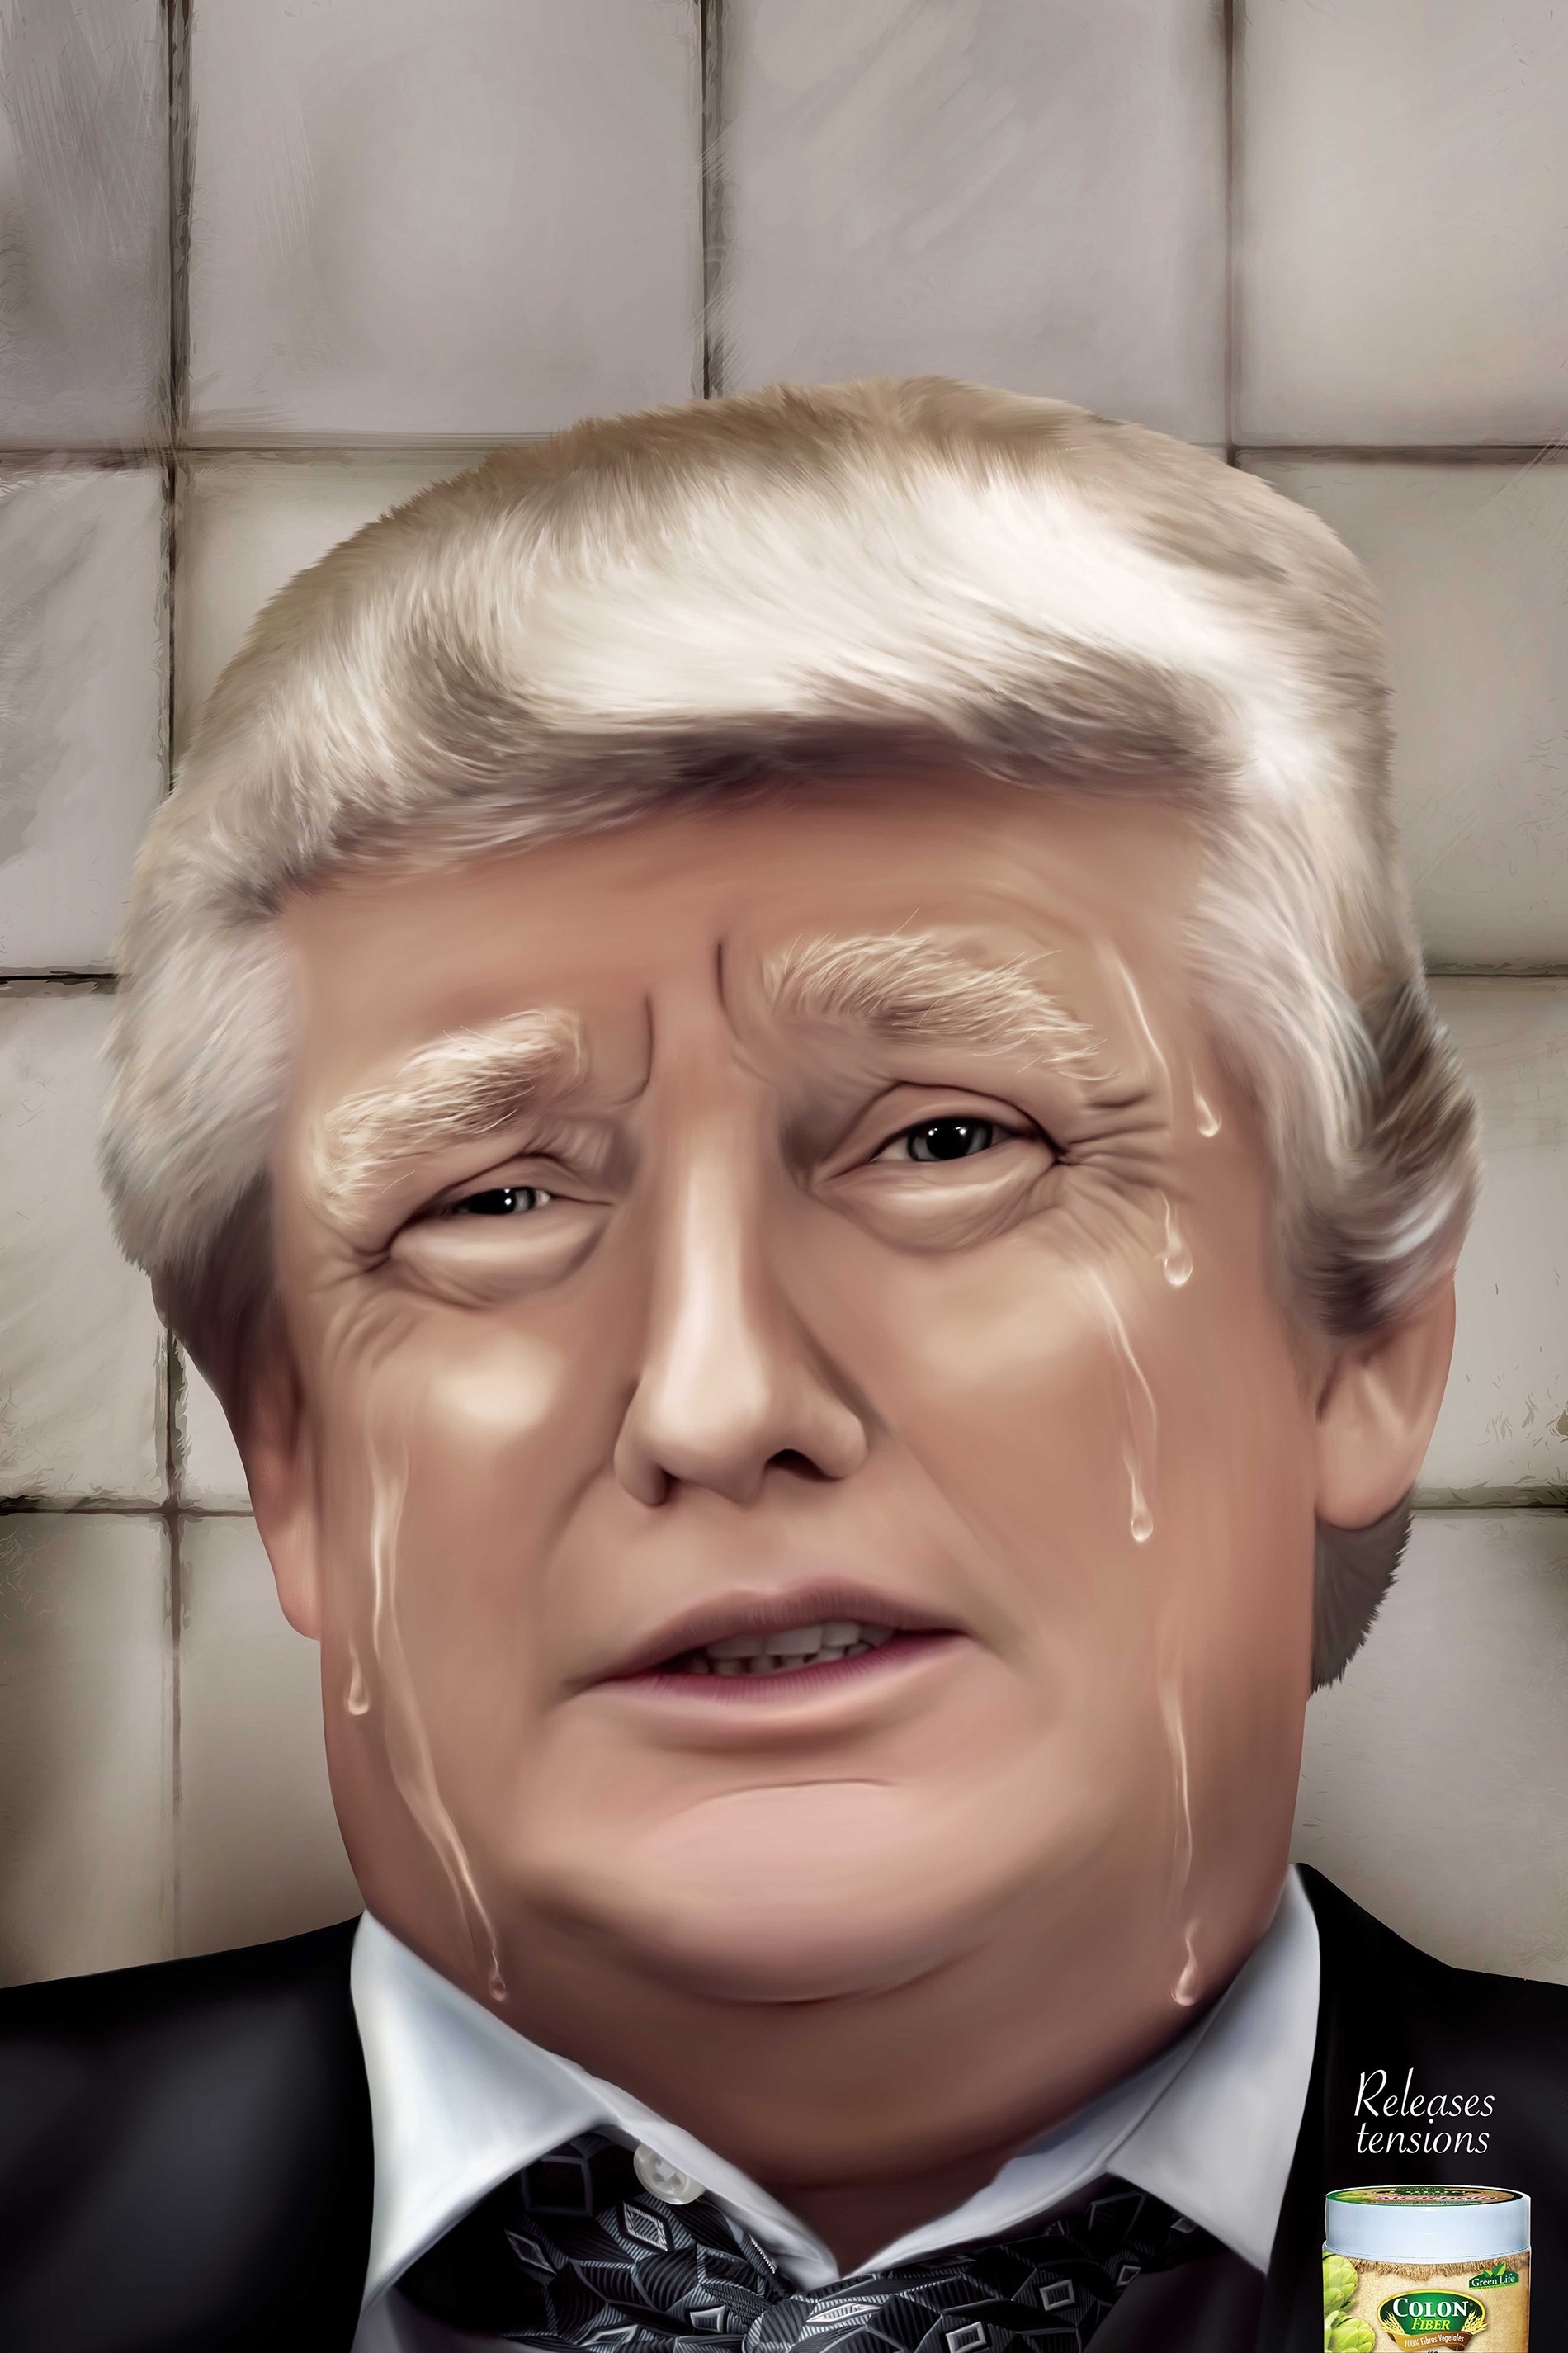 Donald Trump | Fiber Colon | Releases Tensions